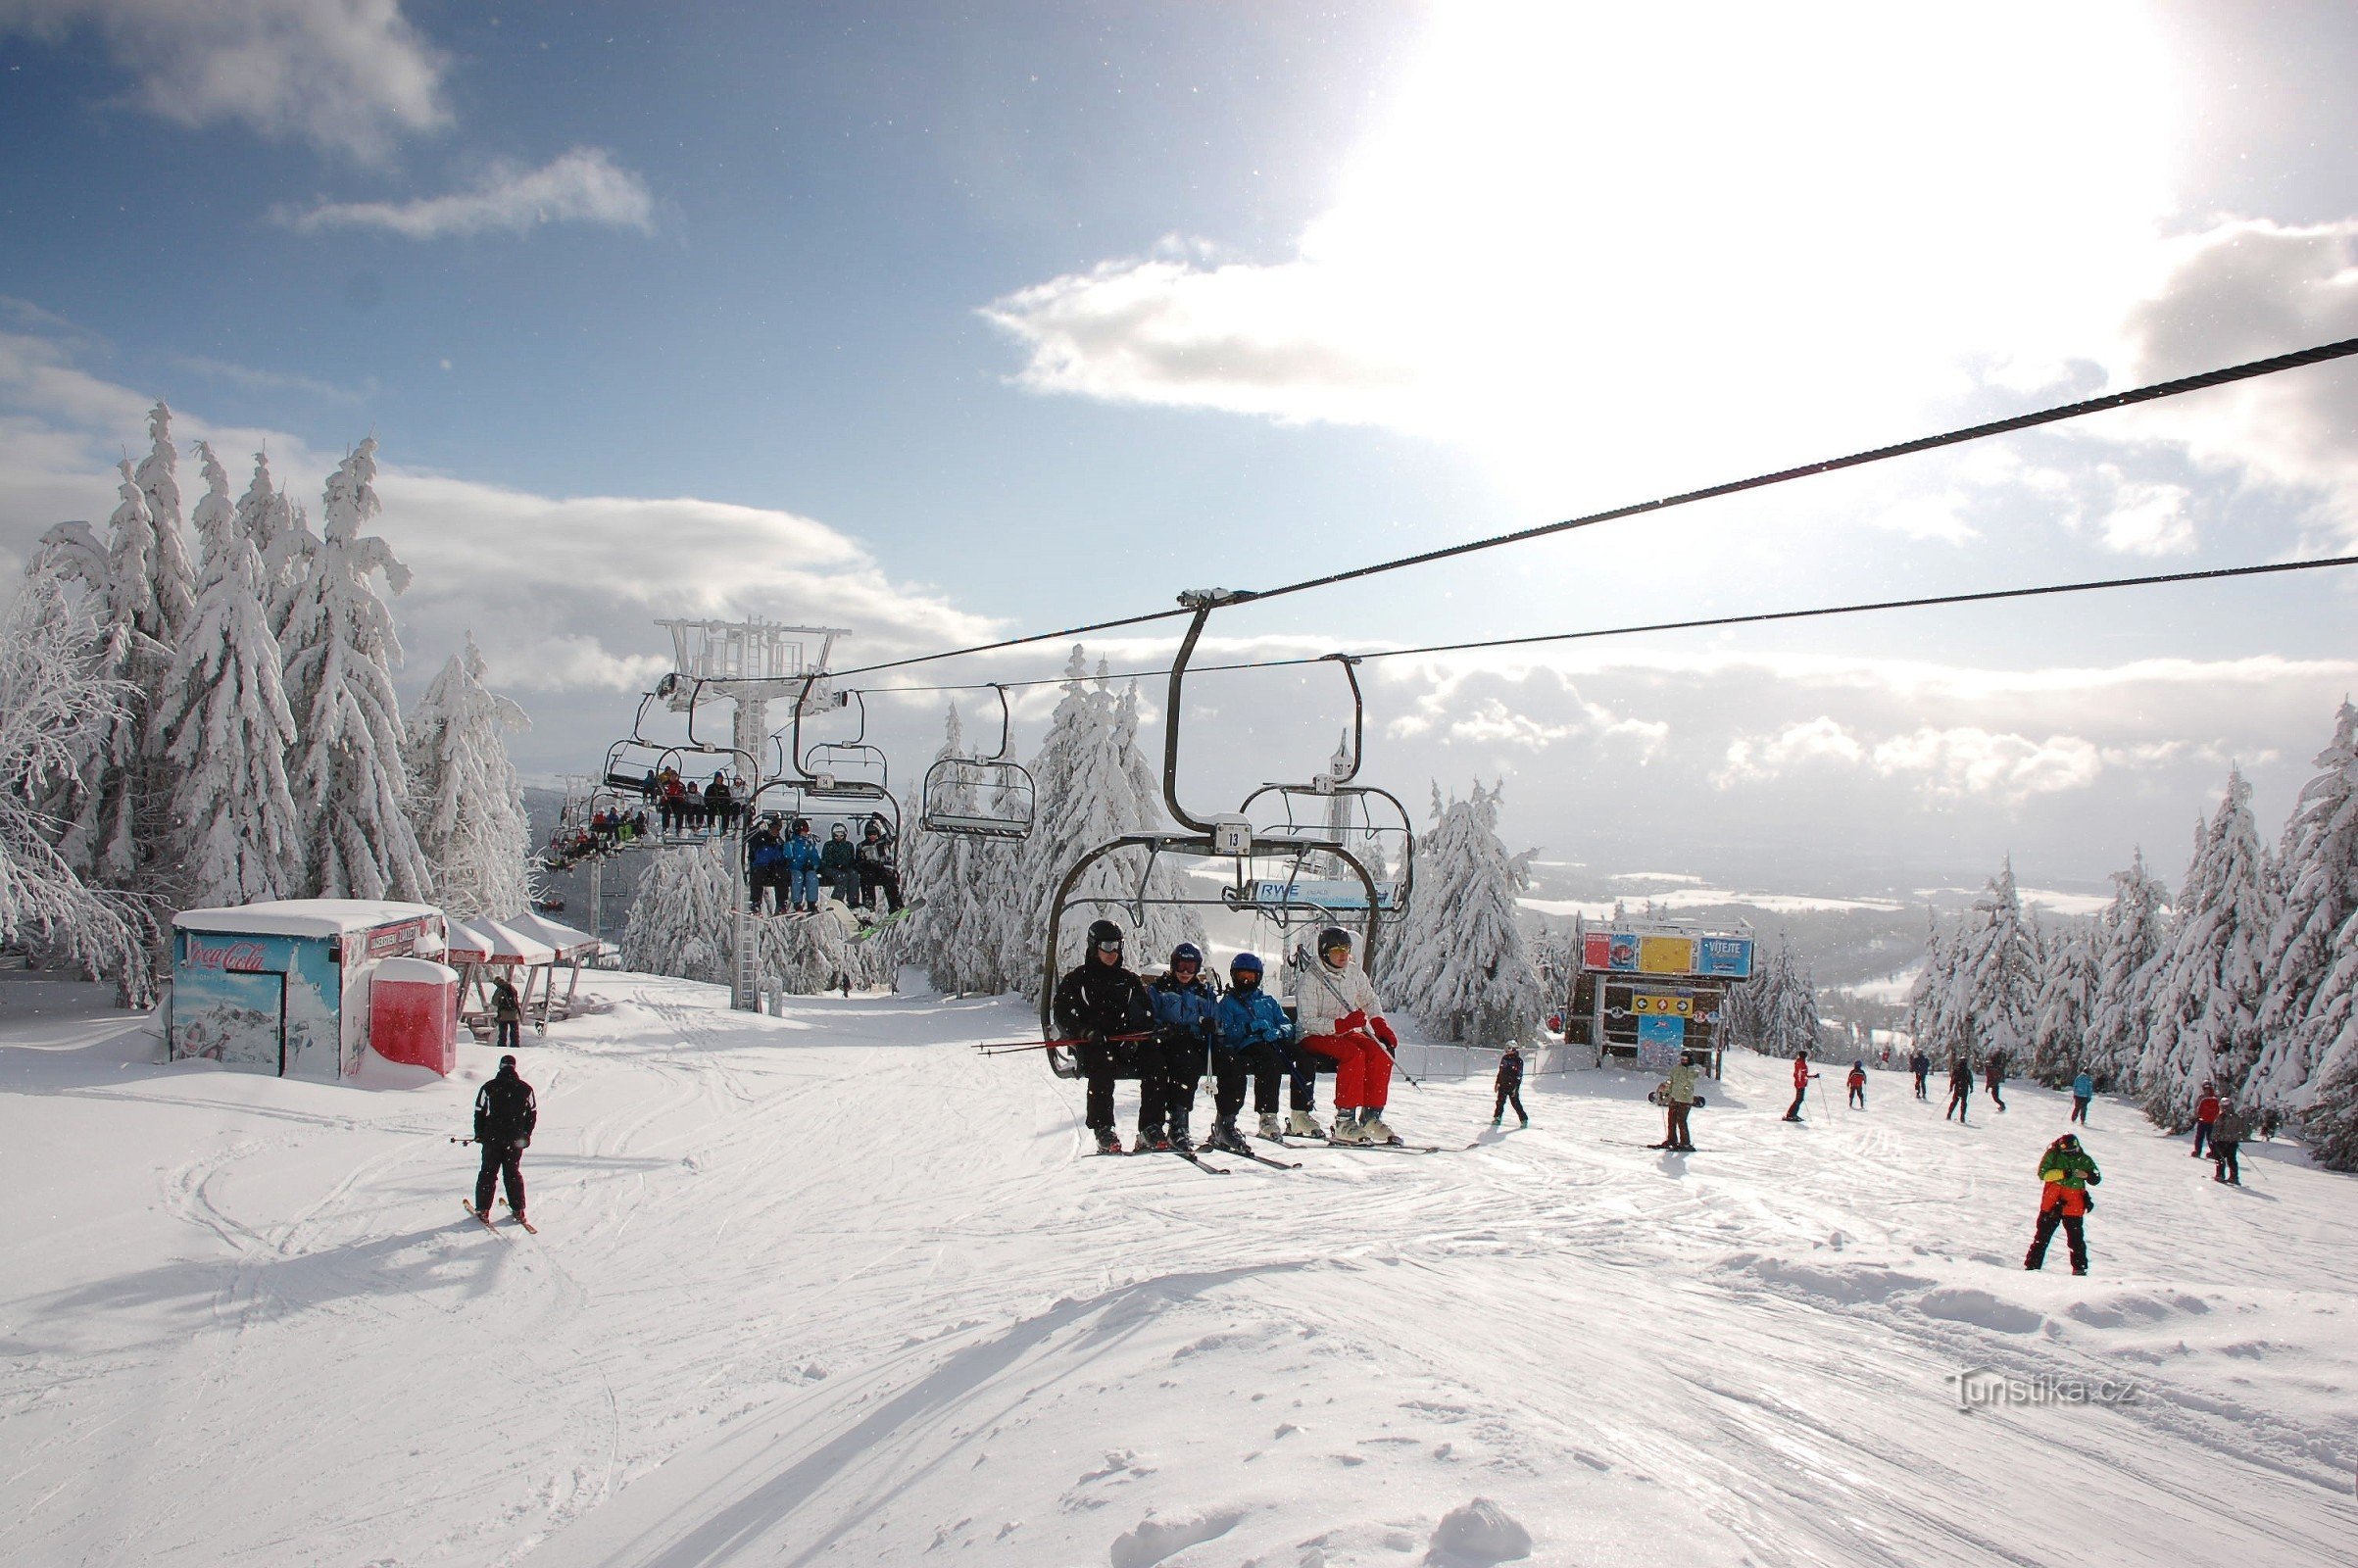 Skizentrum Říčky - ein modernes Skigebiet im Herzen des Adlergebirges